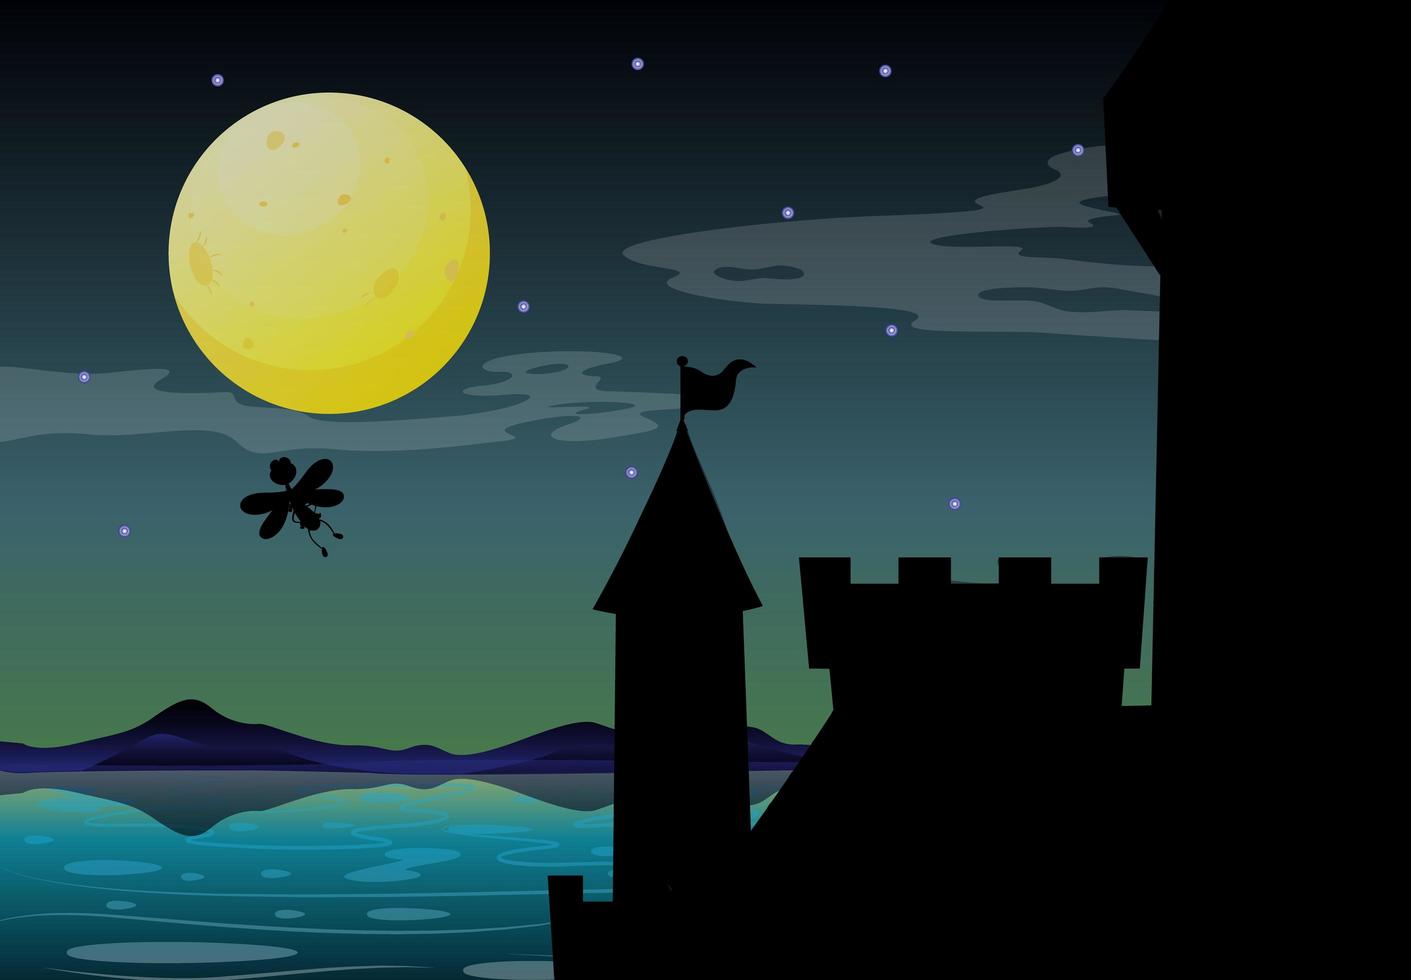 Castle scene at night vector